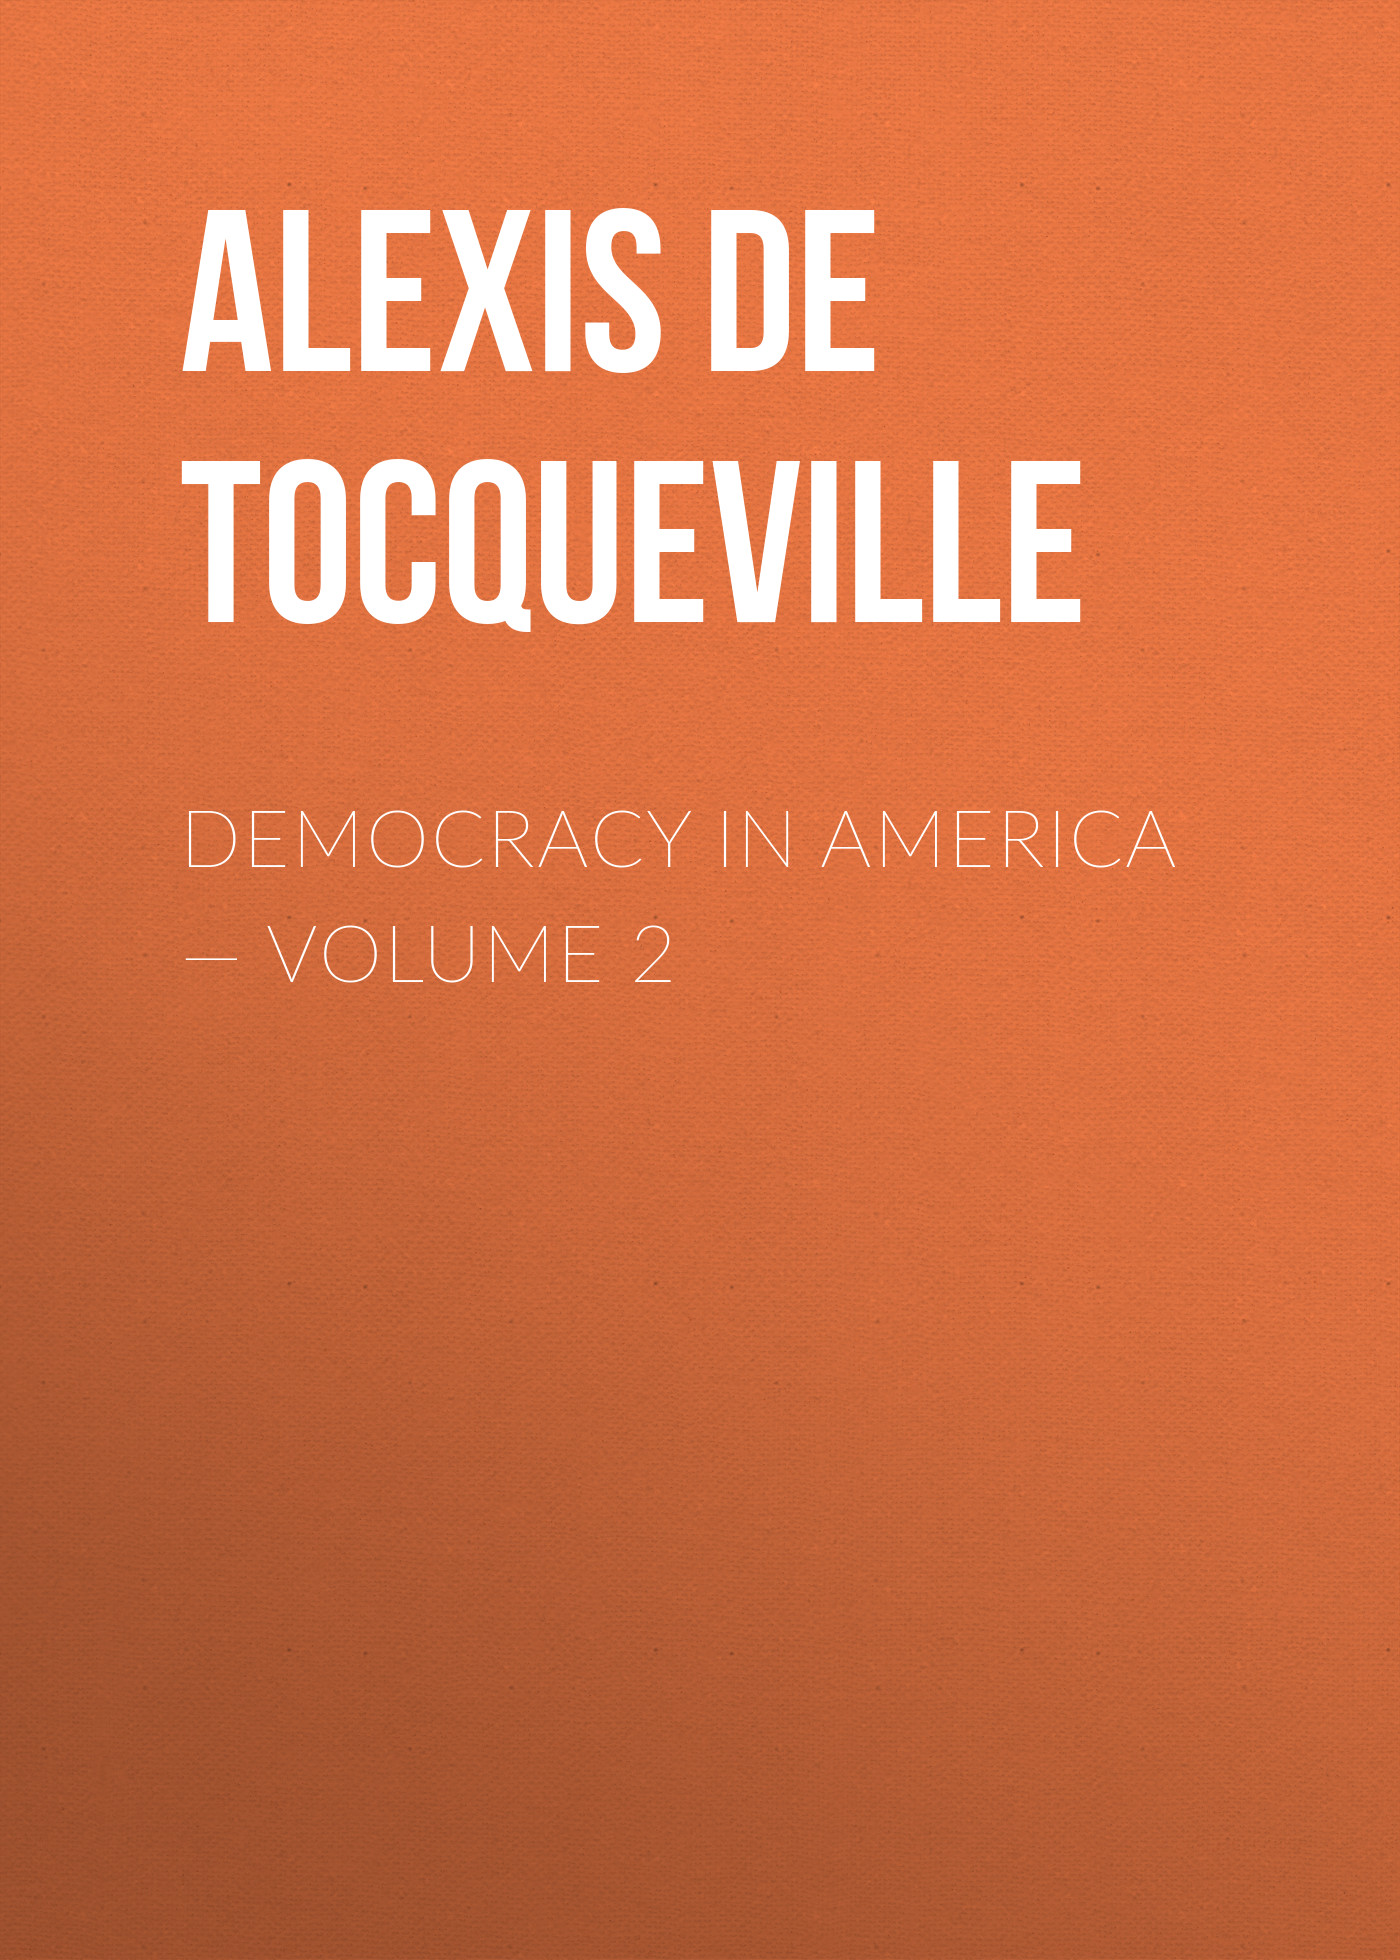 Democracy in America— Volume 2